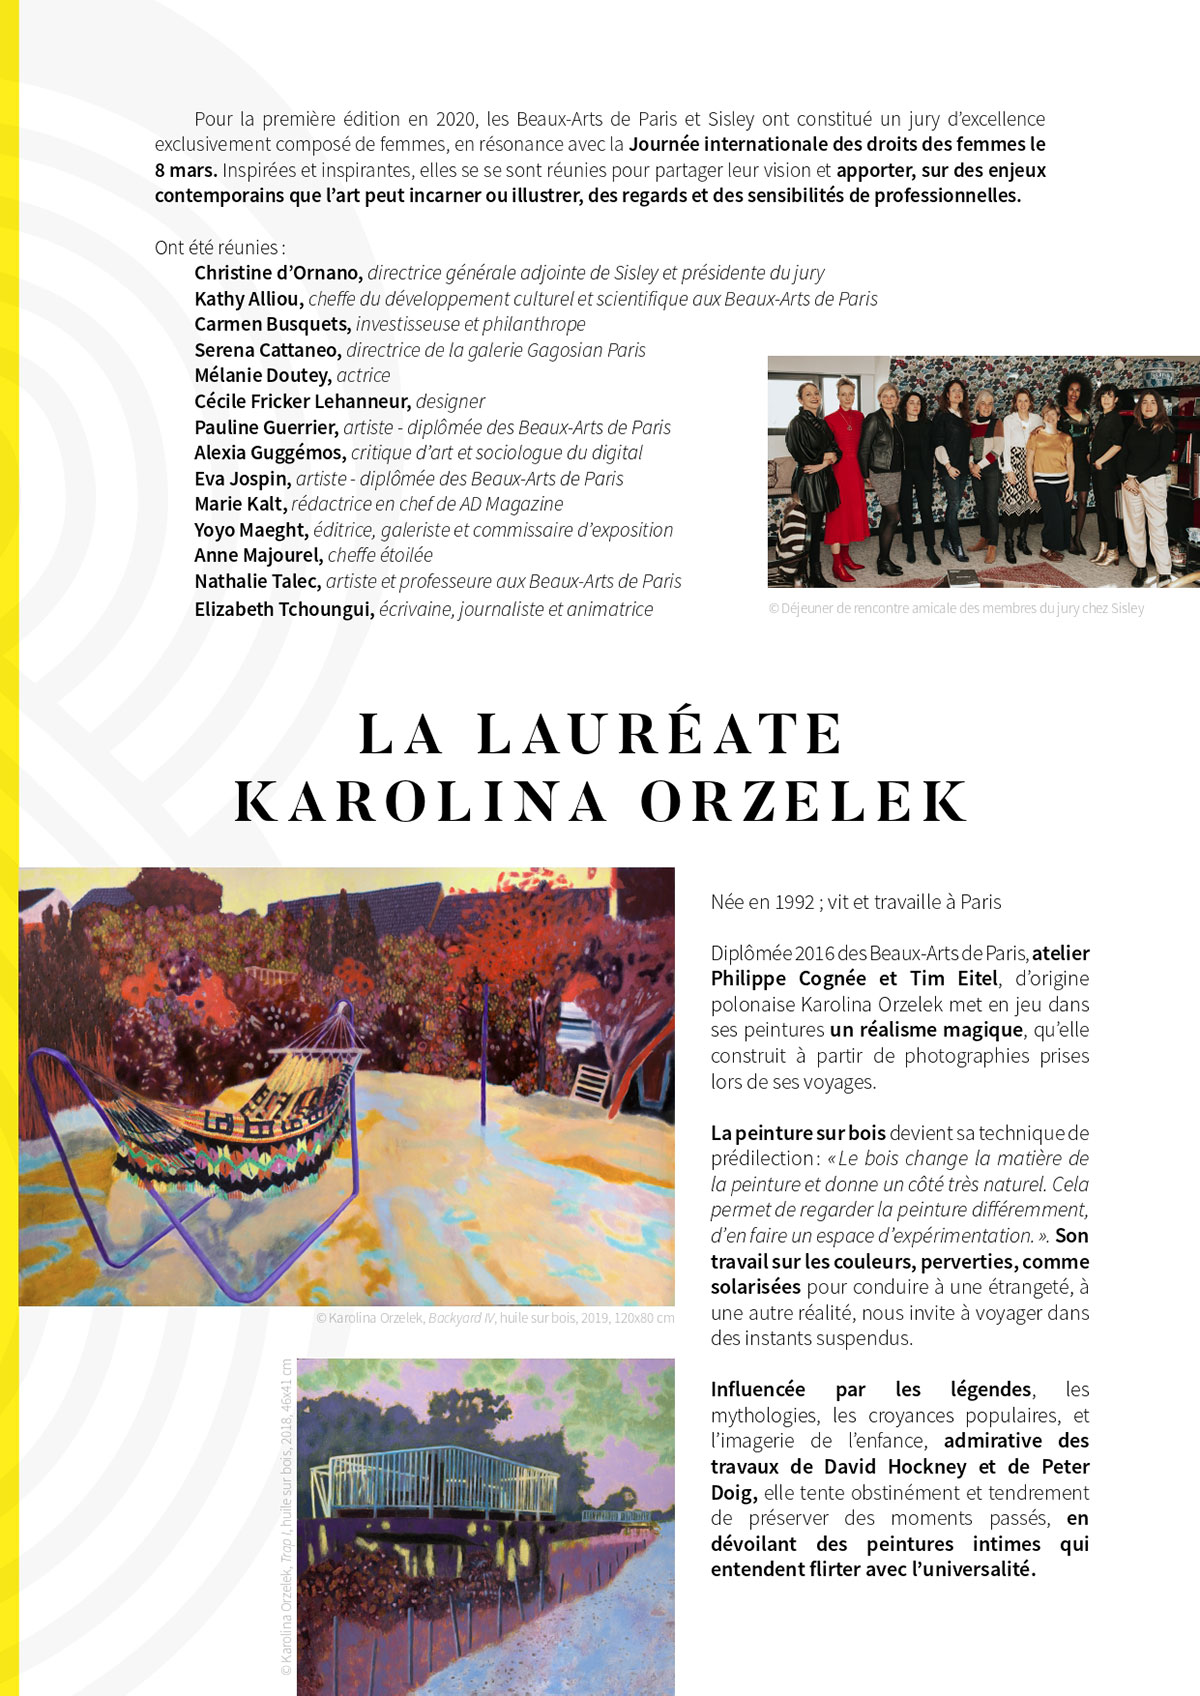 "Press release, Prix Sisley Beaux-Arts de Paris pour la Jeune Création", March 8, 2020